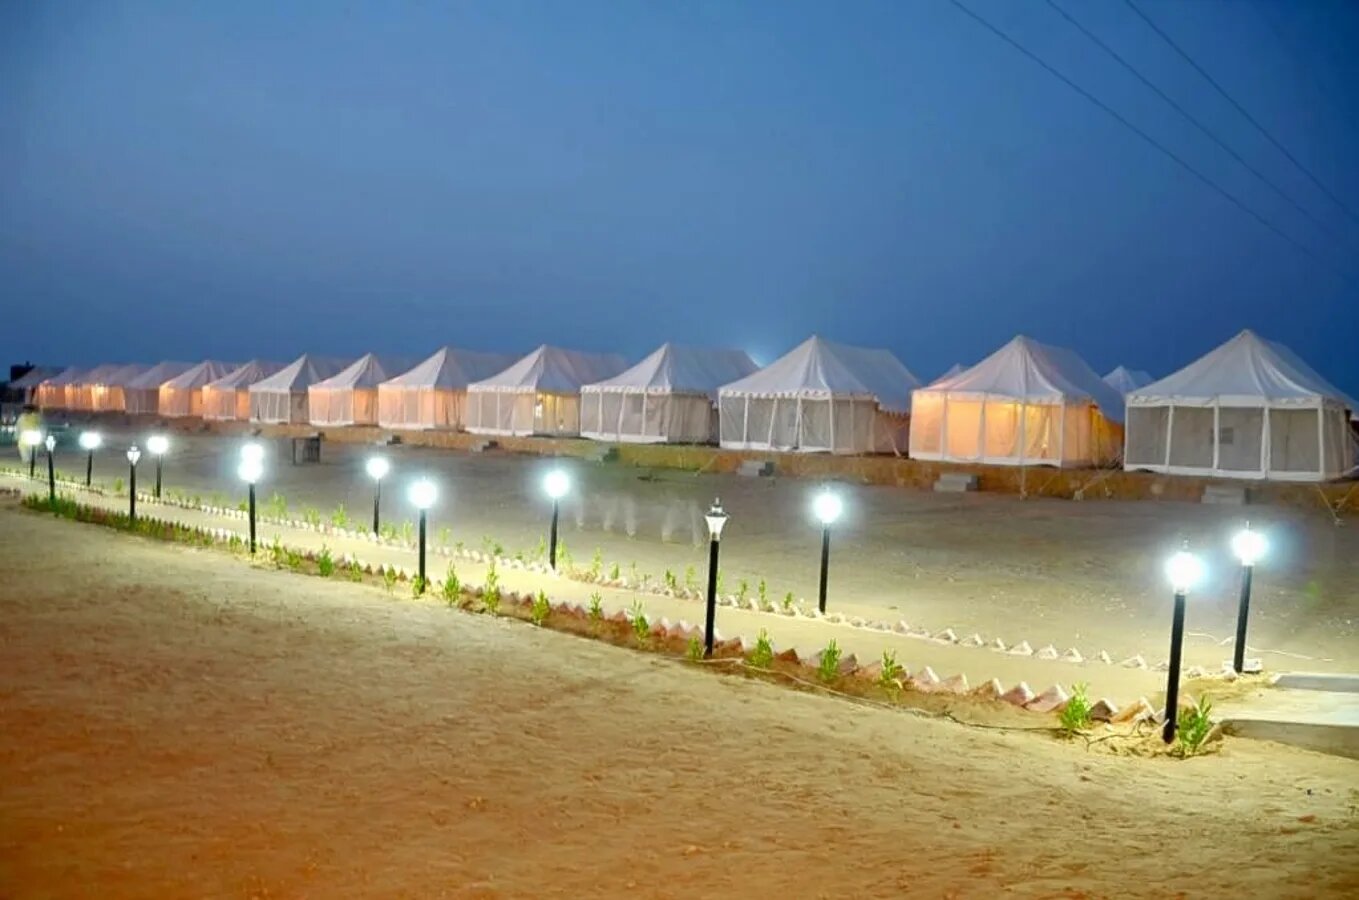 5 Star jaisalmer desert camp | jaisalmer desert camp package